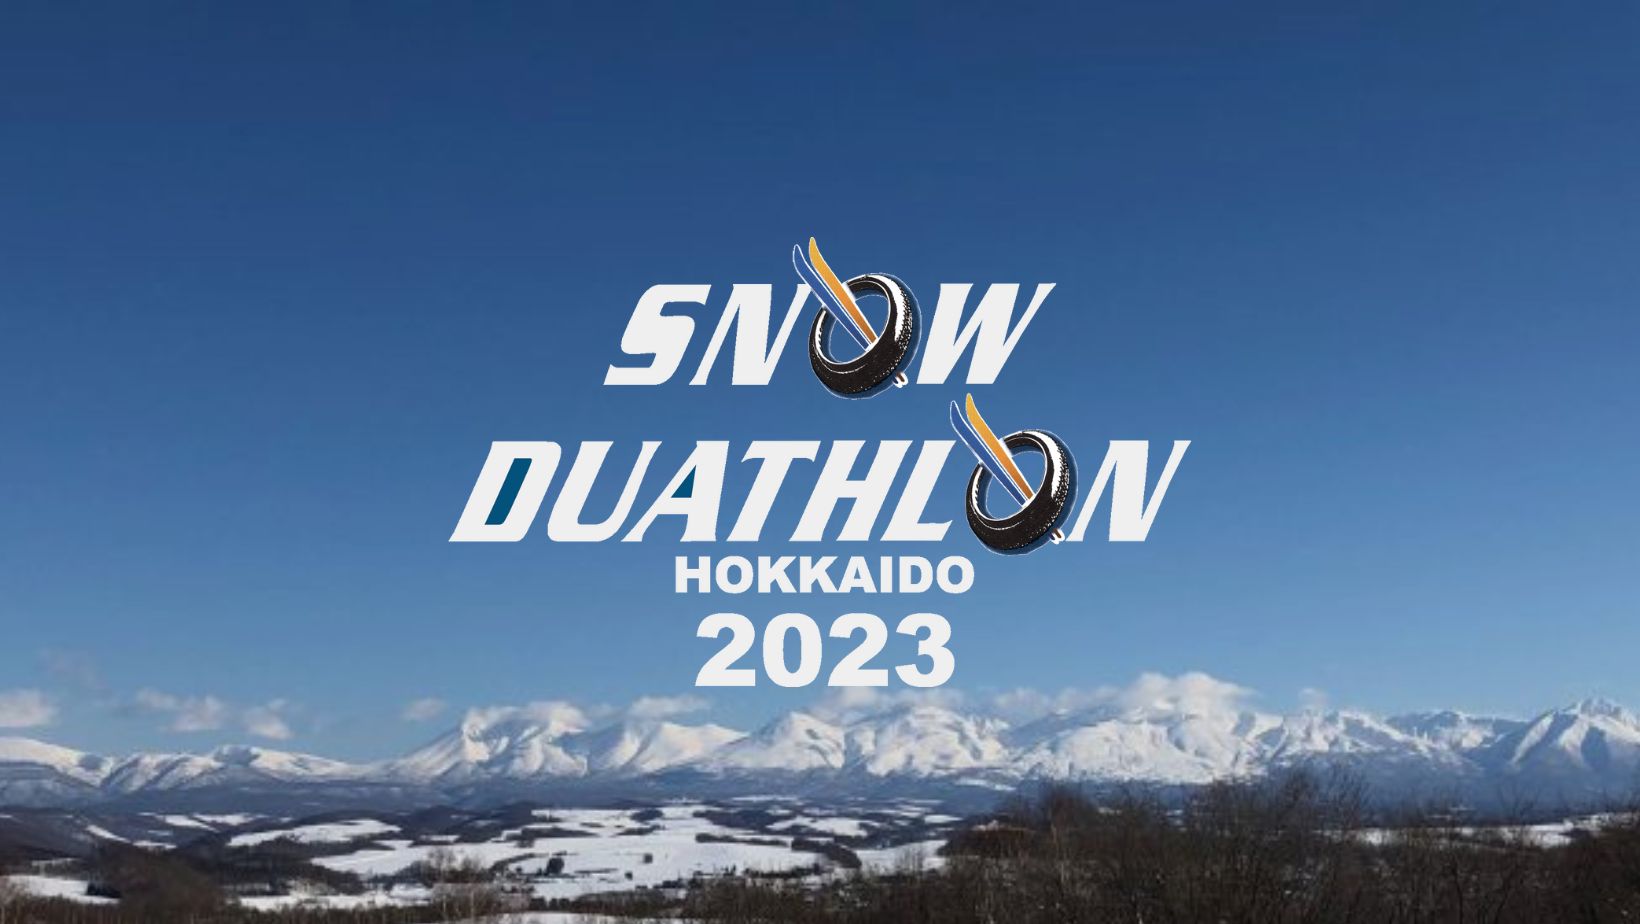 【開催報告】スノーデュアスロン北海道2022-2023